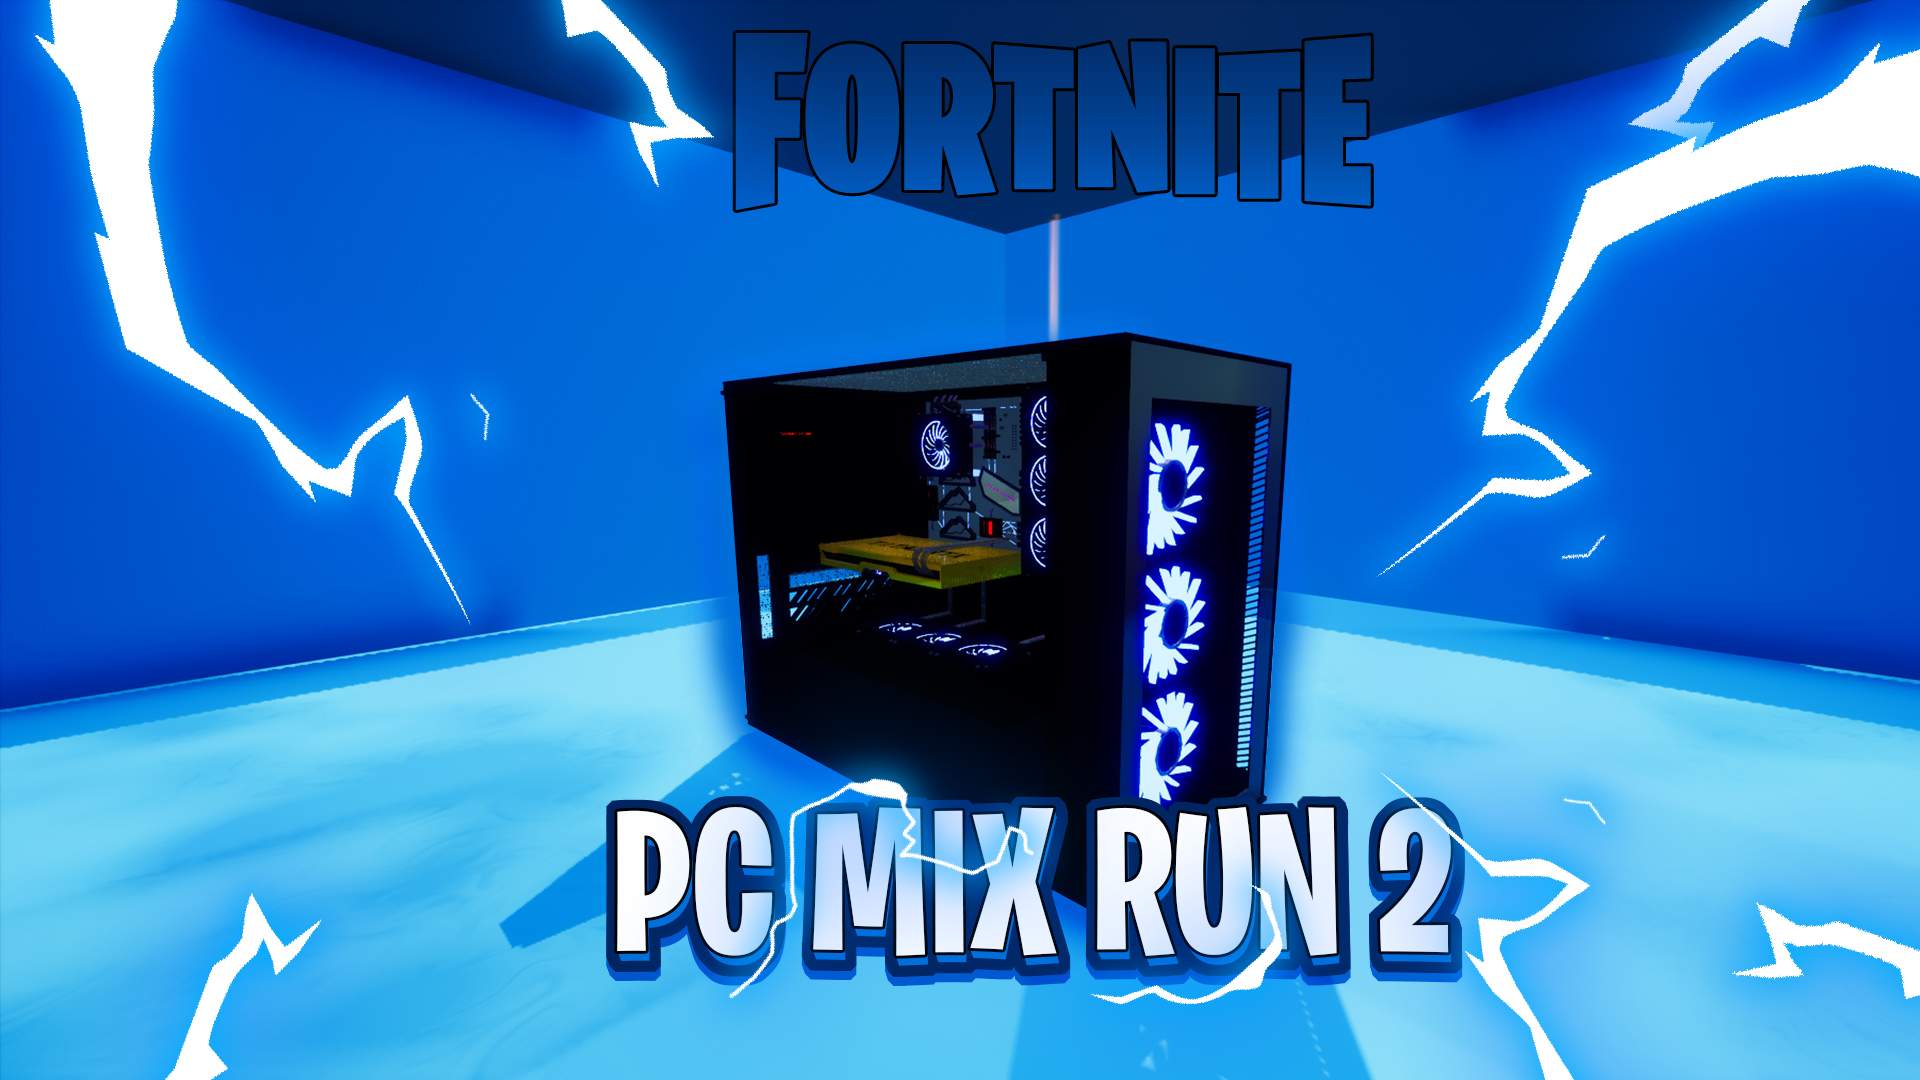 PC MIX RUN 2